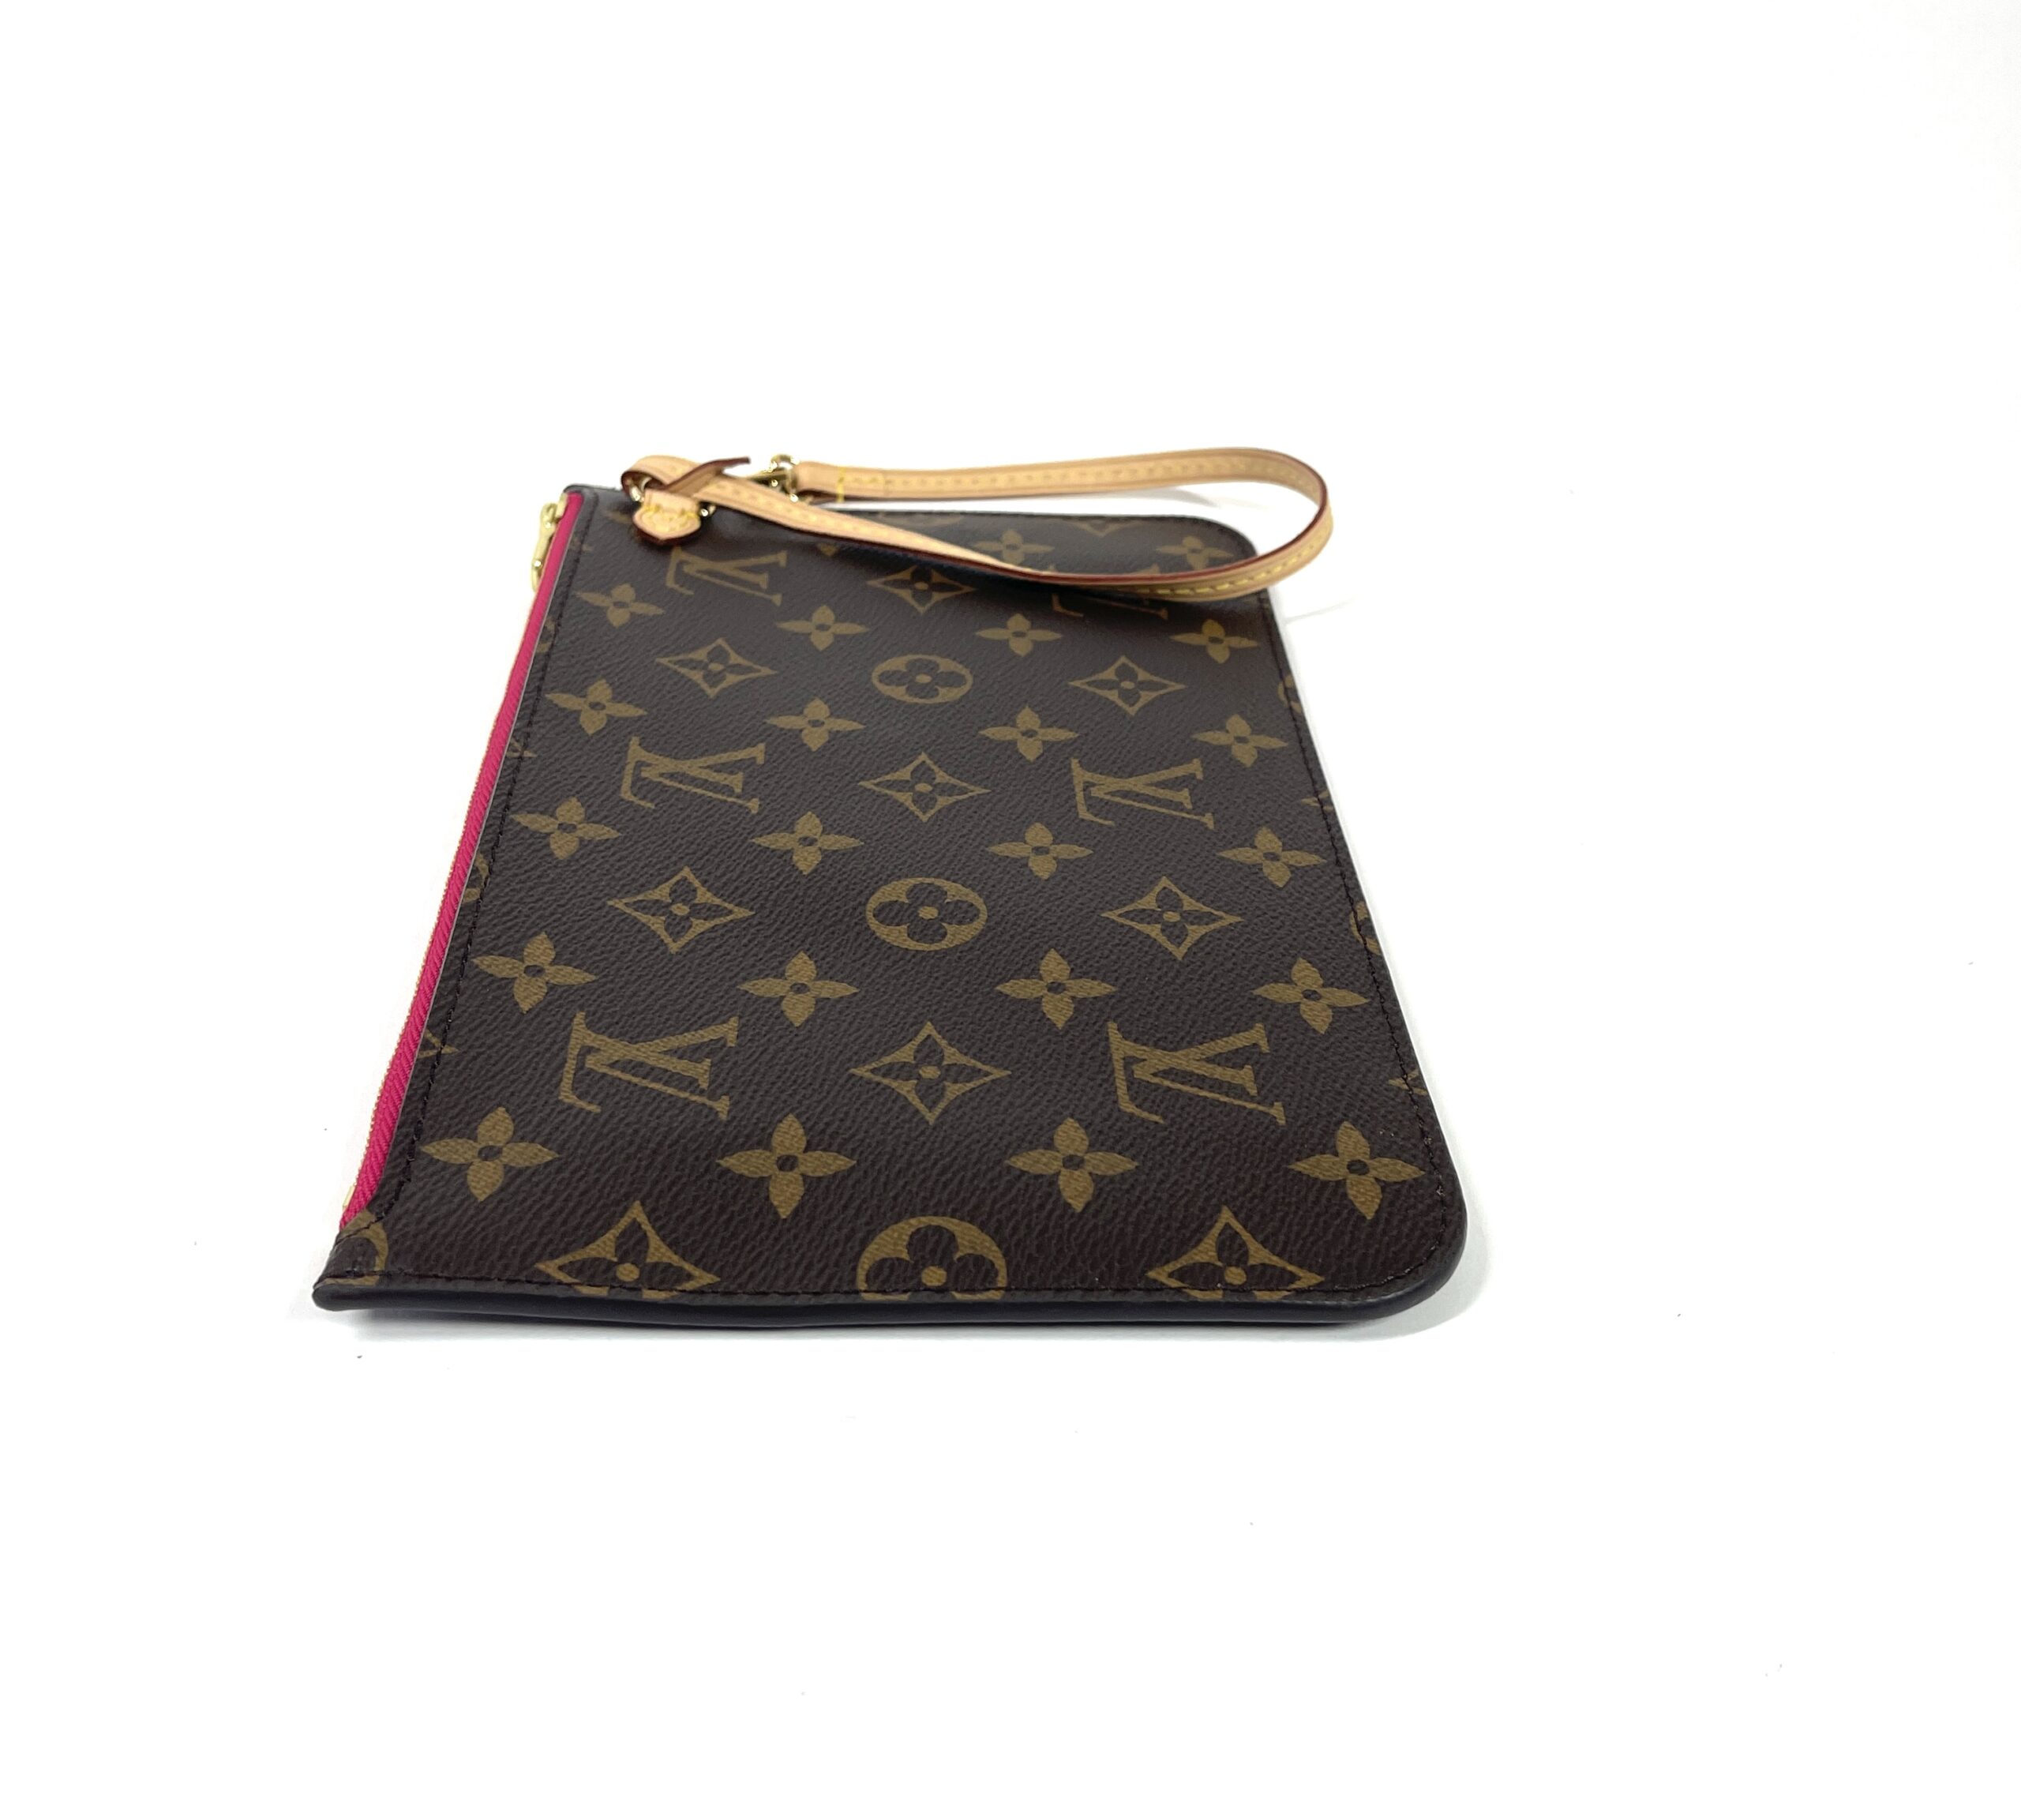 Louis Vuitton Neverfull Clutch Bag